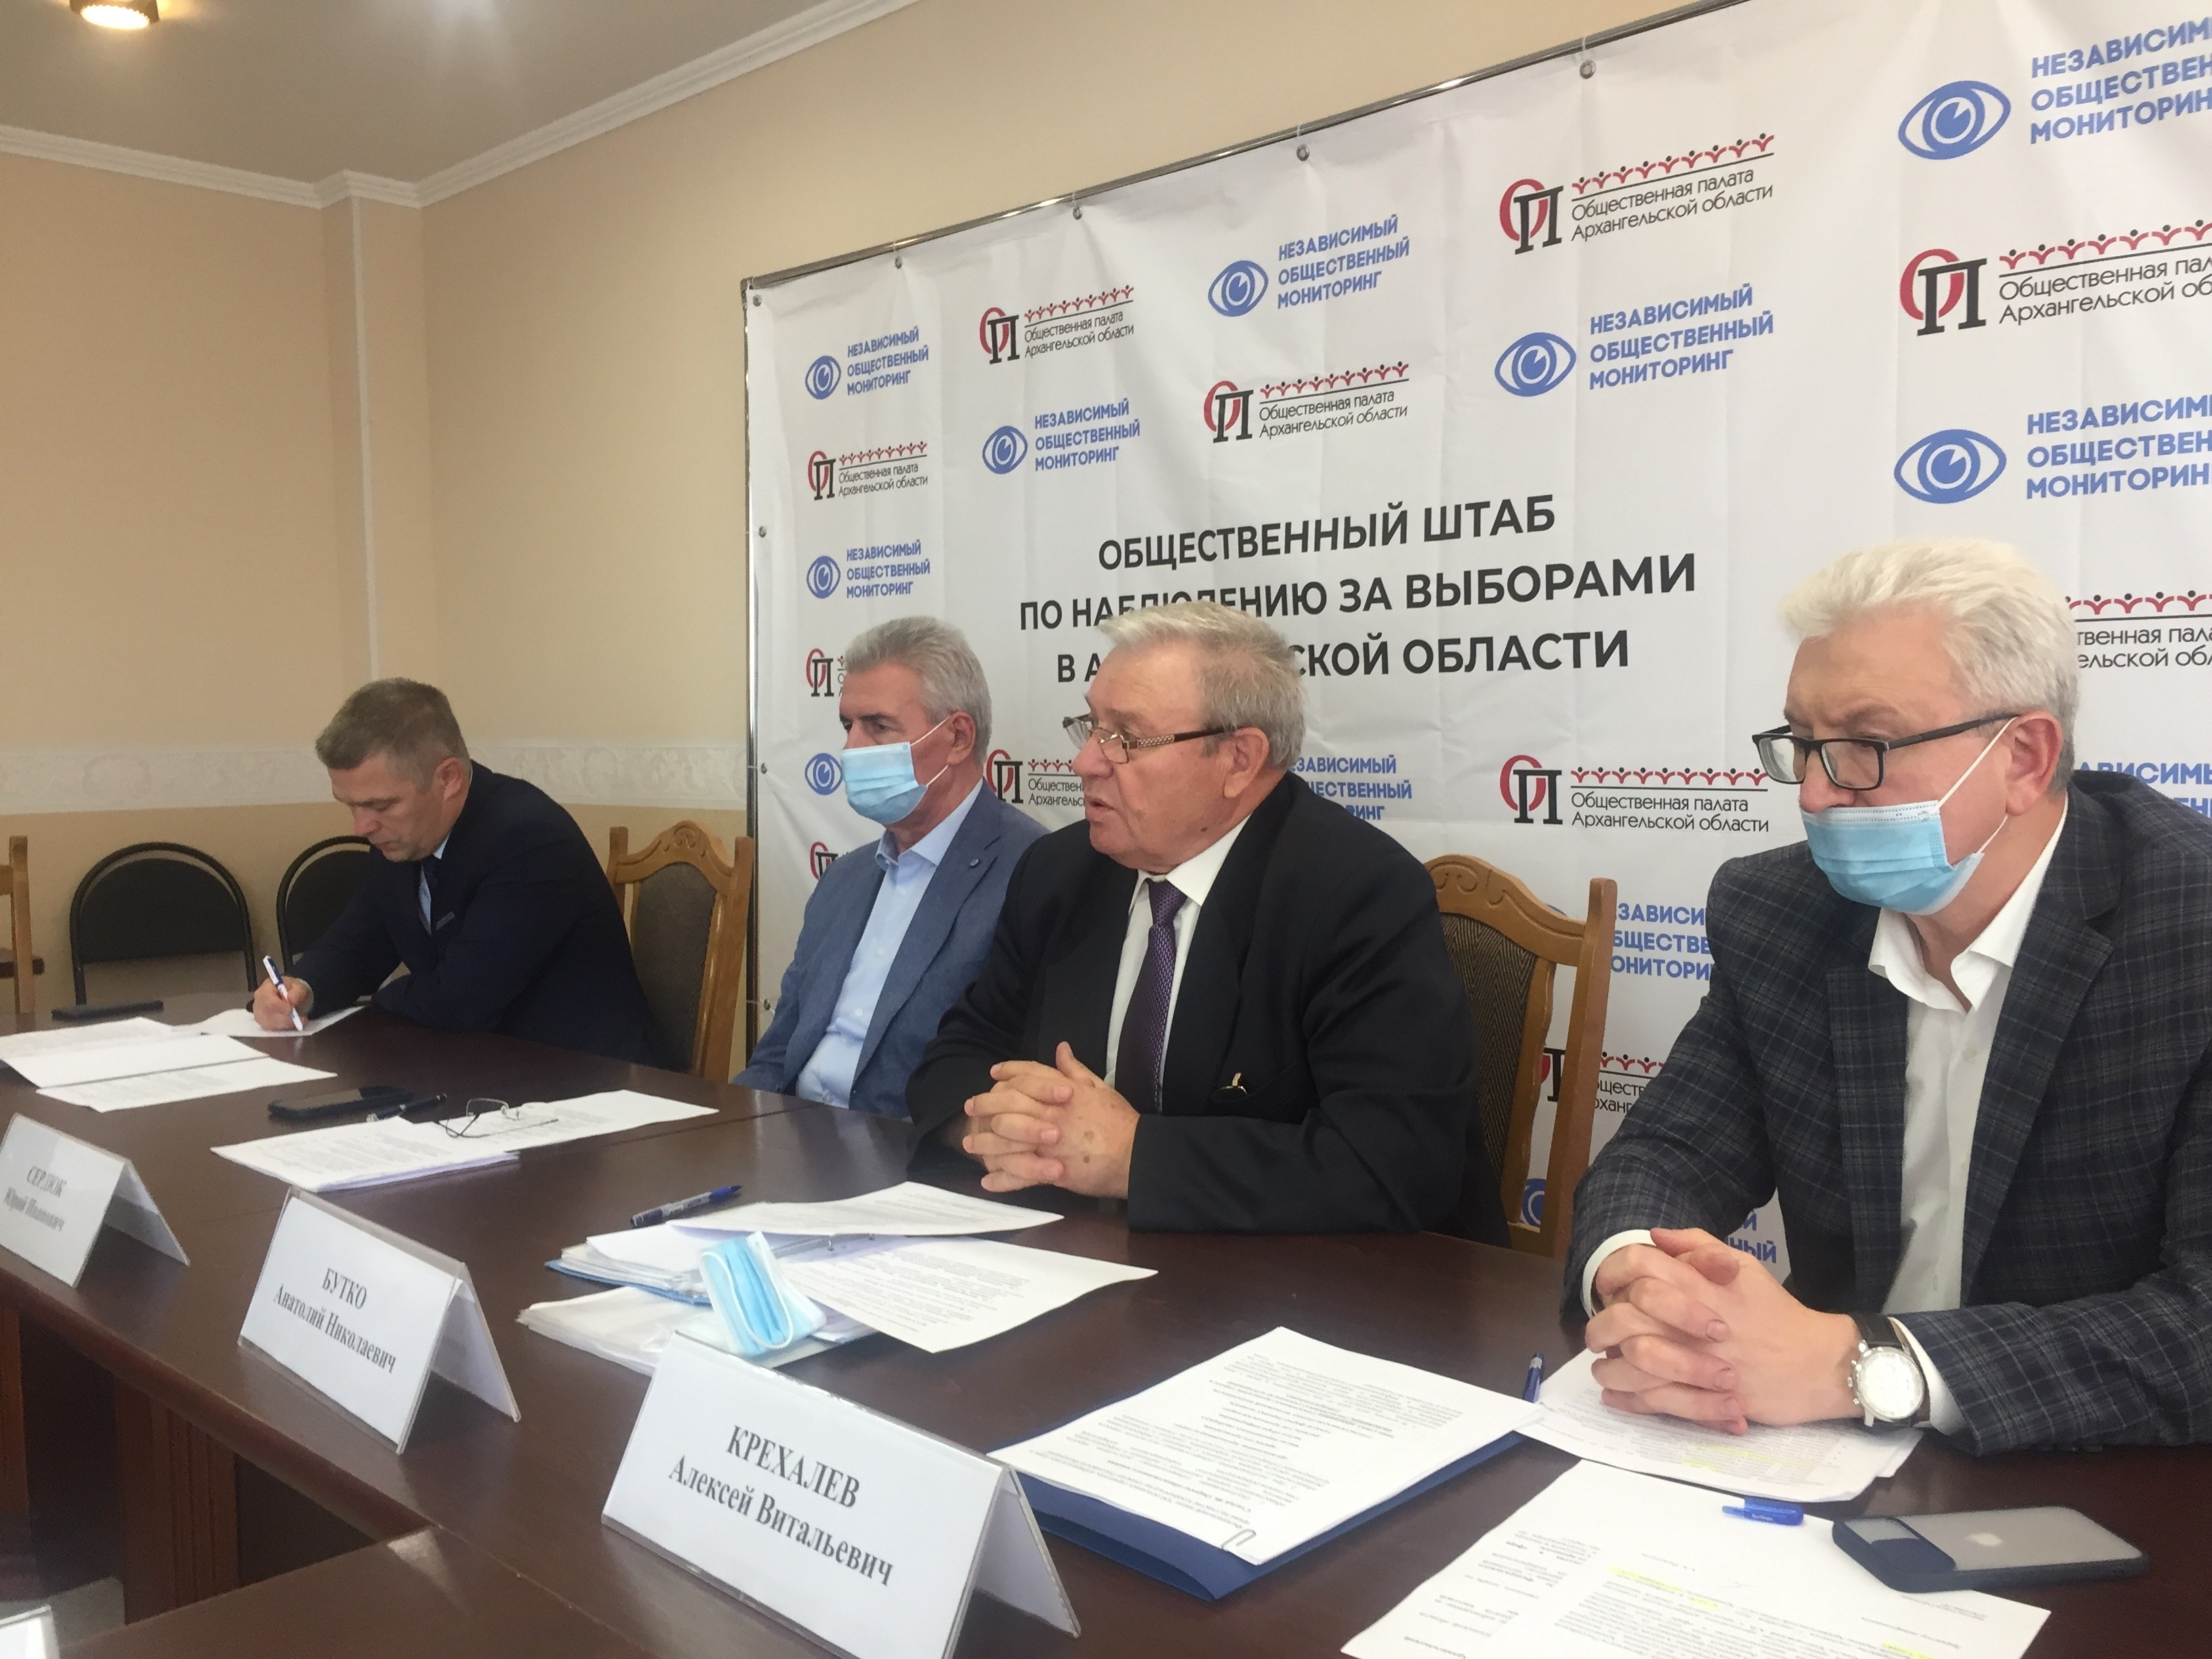  Избирком и Роскомнадзор просвещали журналистов в Архангельске